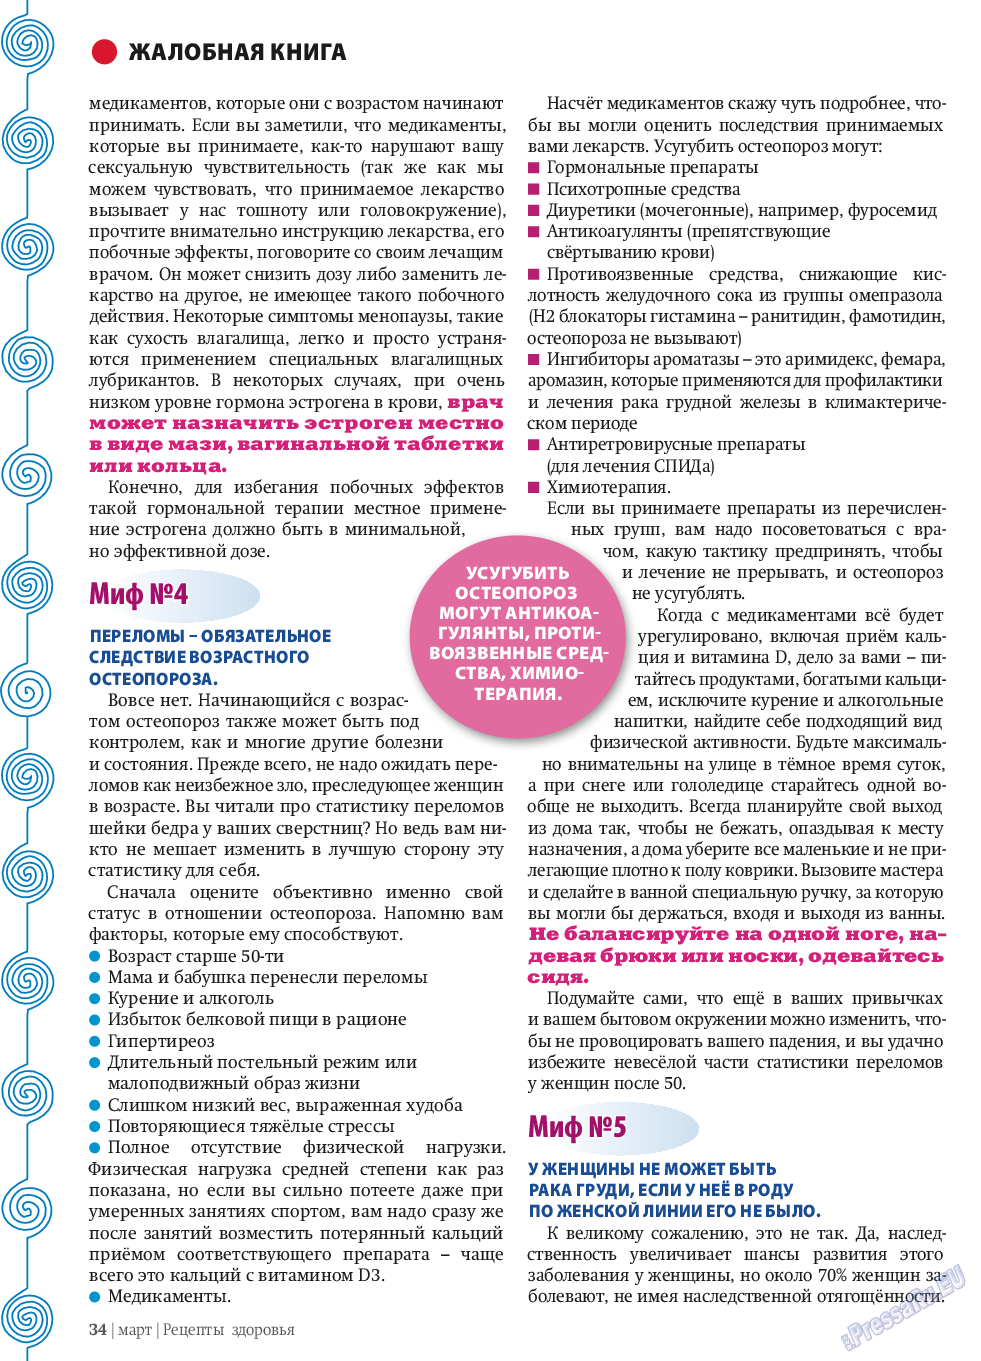 Рецепты здоровья, журнал. 2014 №58 стр.34